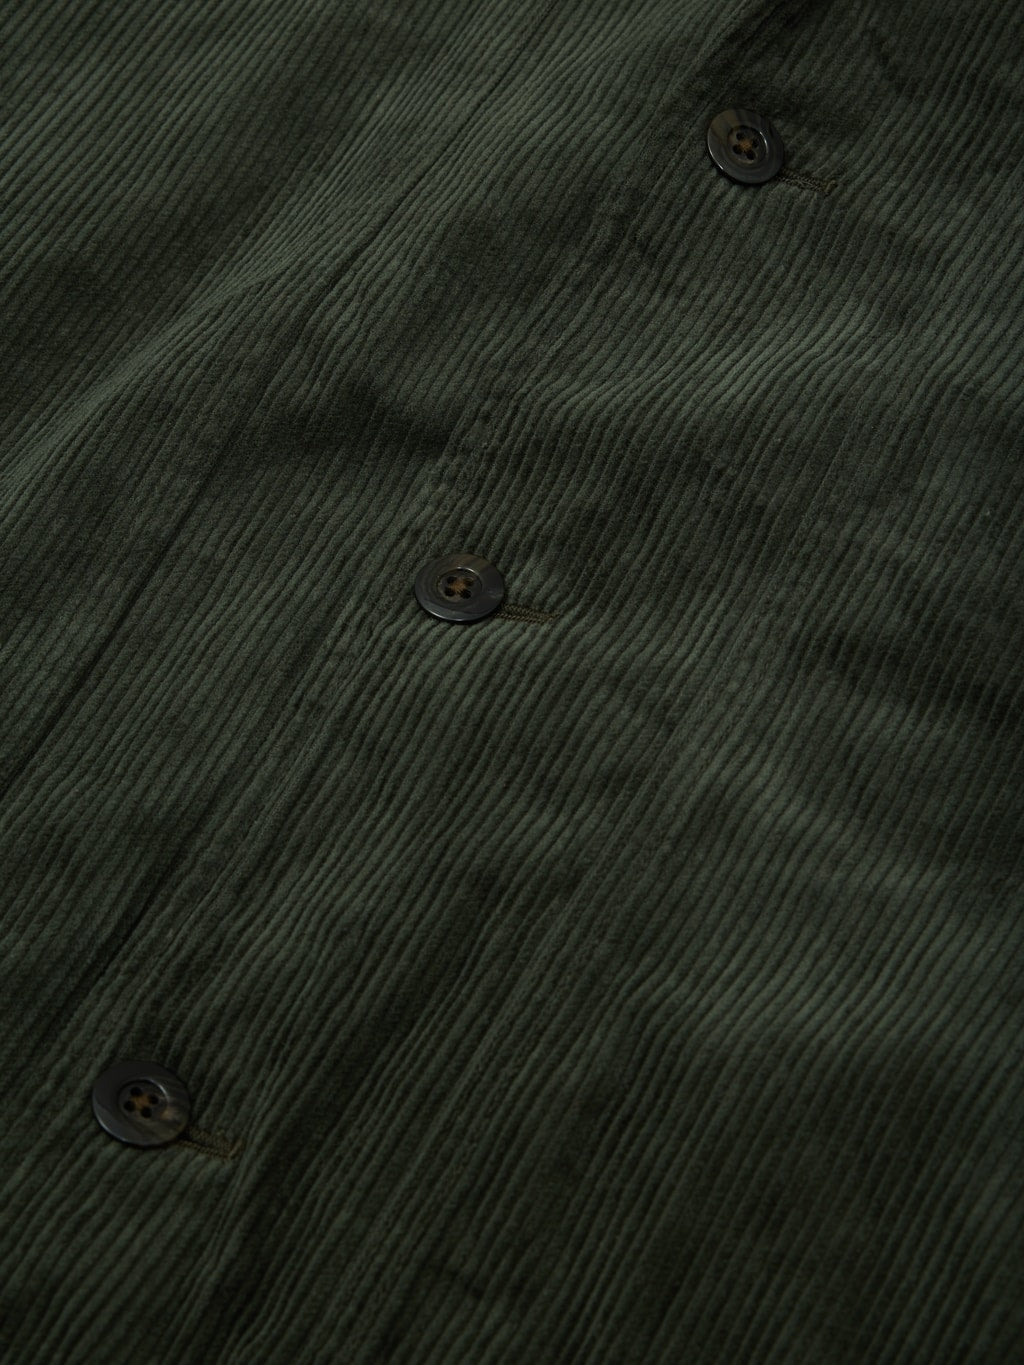 Tanuki Sazanami Corduroy Bayberry Dyed Green Jacket  urea buttons